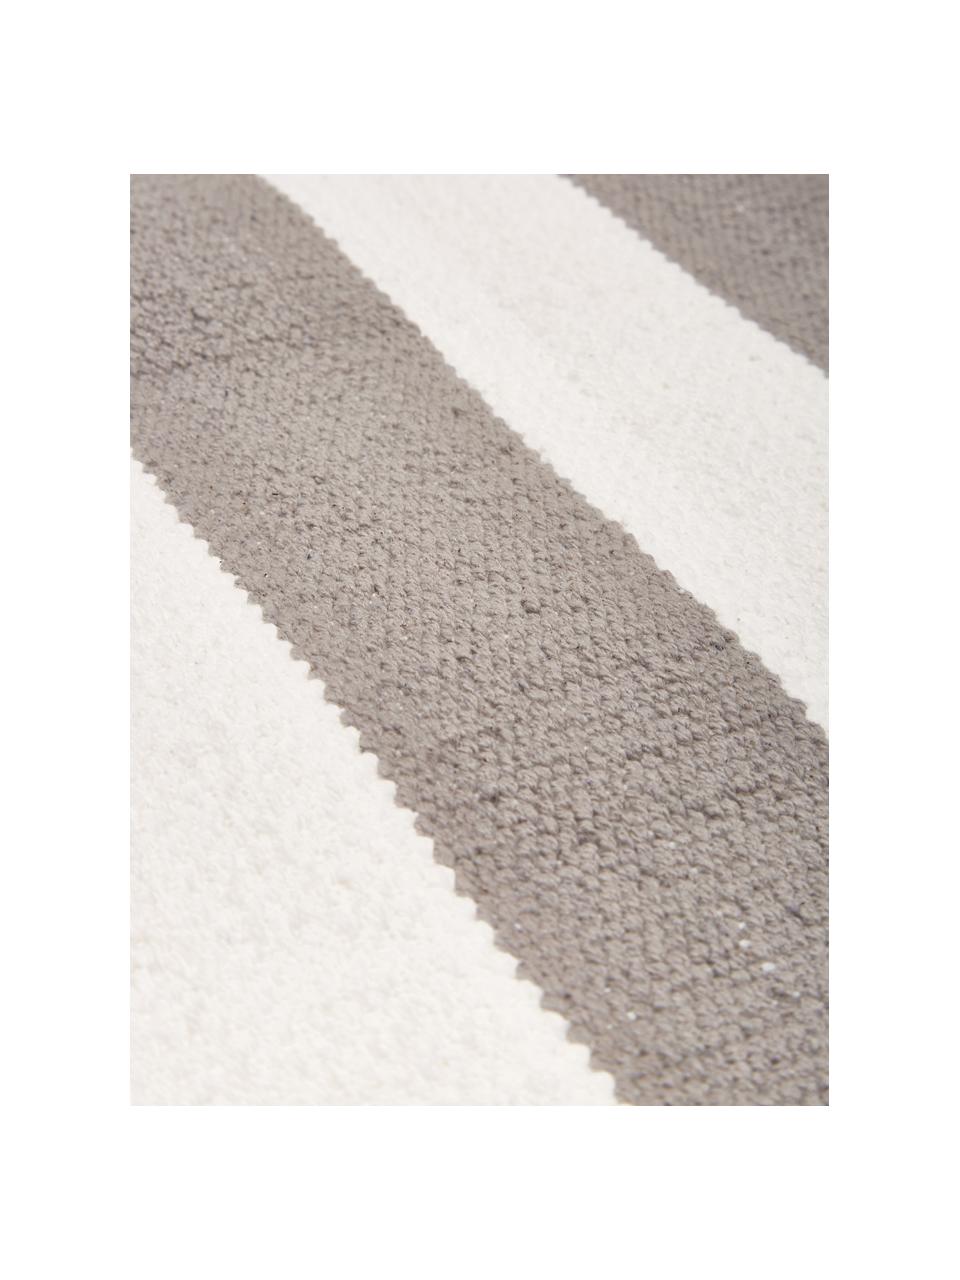 Tappeto a righe in cotone grigio/bianco tessuto a mano Blocker, 100% cotone certificato GRS, Grigio, Larg. 200 x Lung. 300 cm (taglia L)